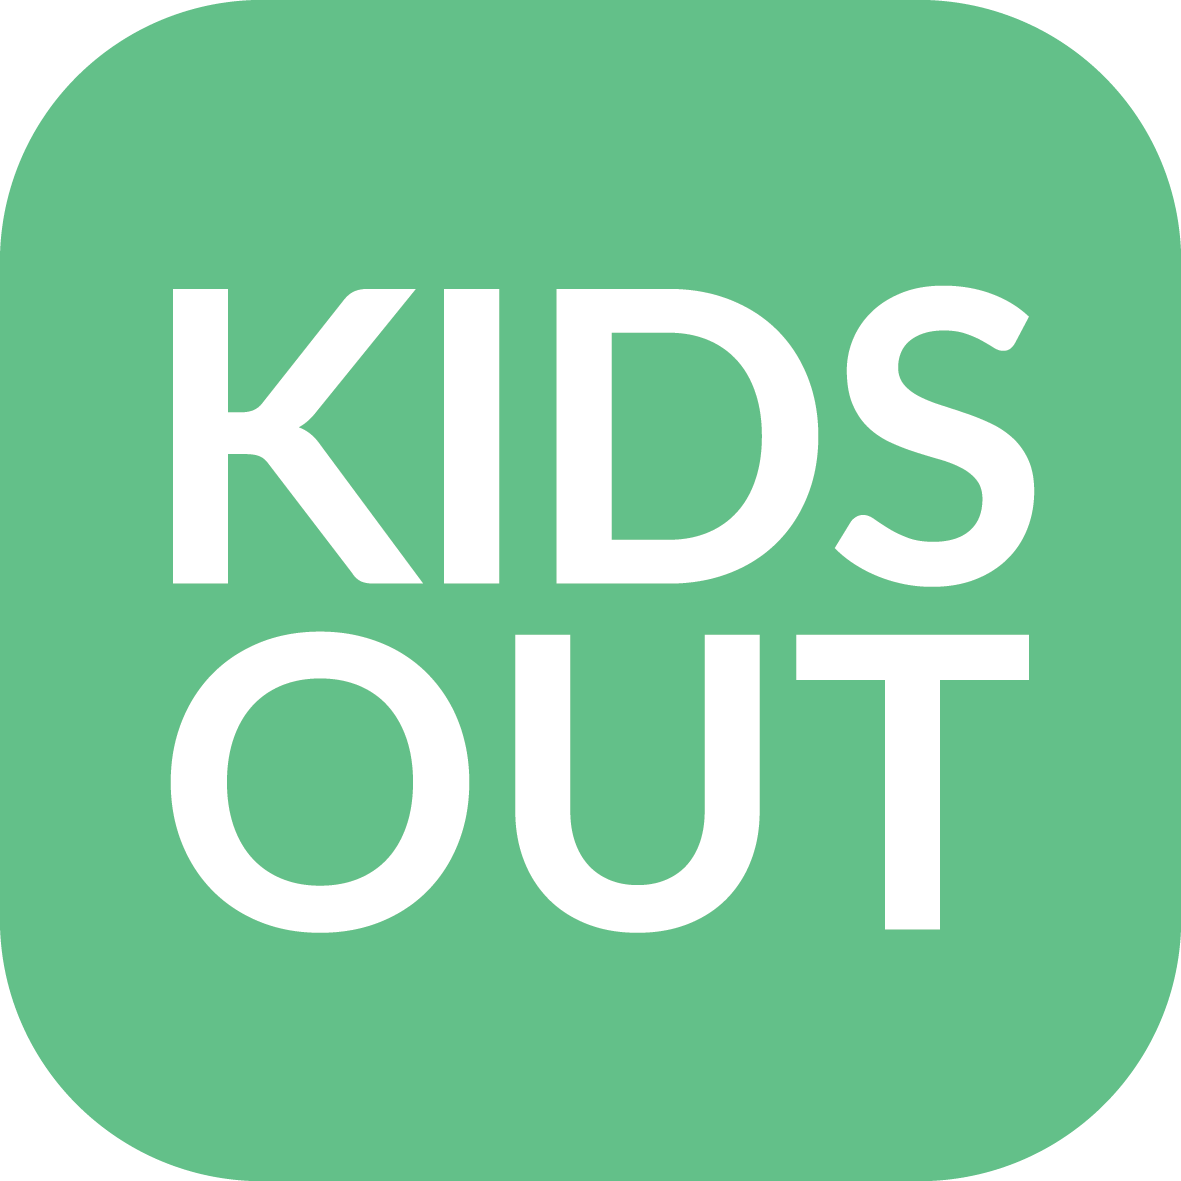 Kidsout